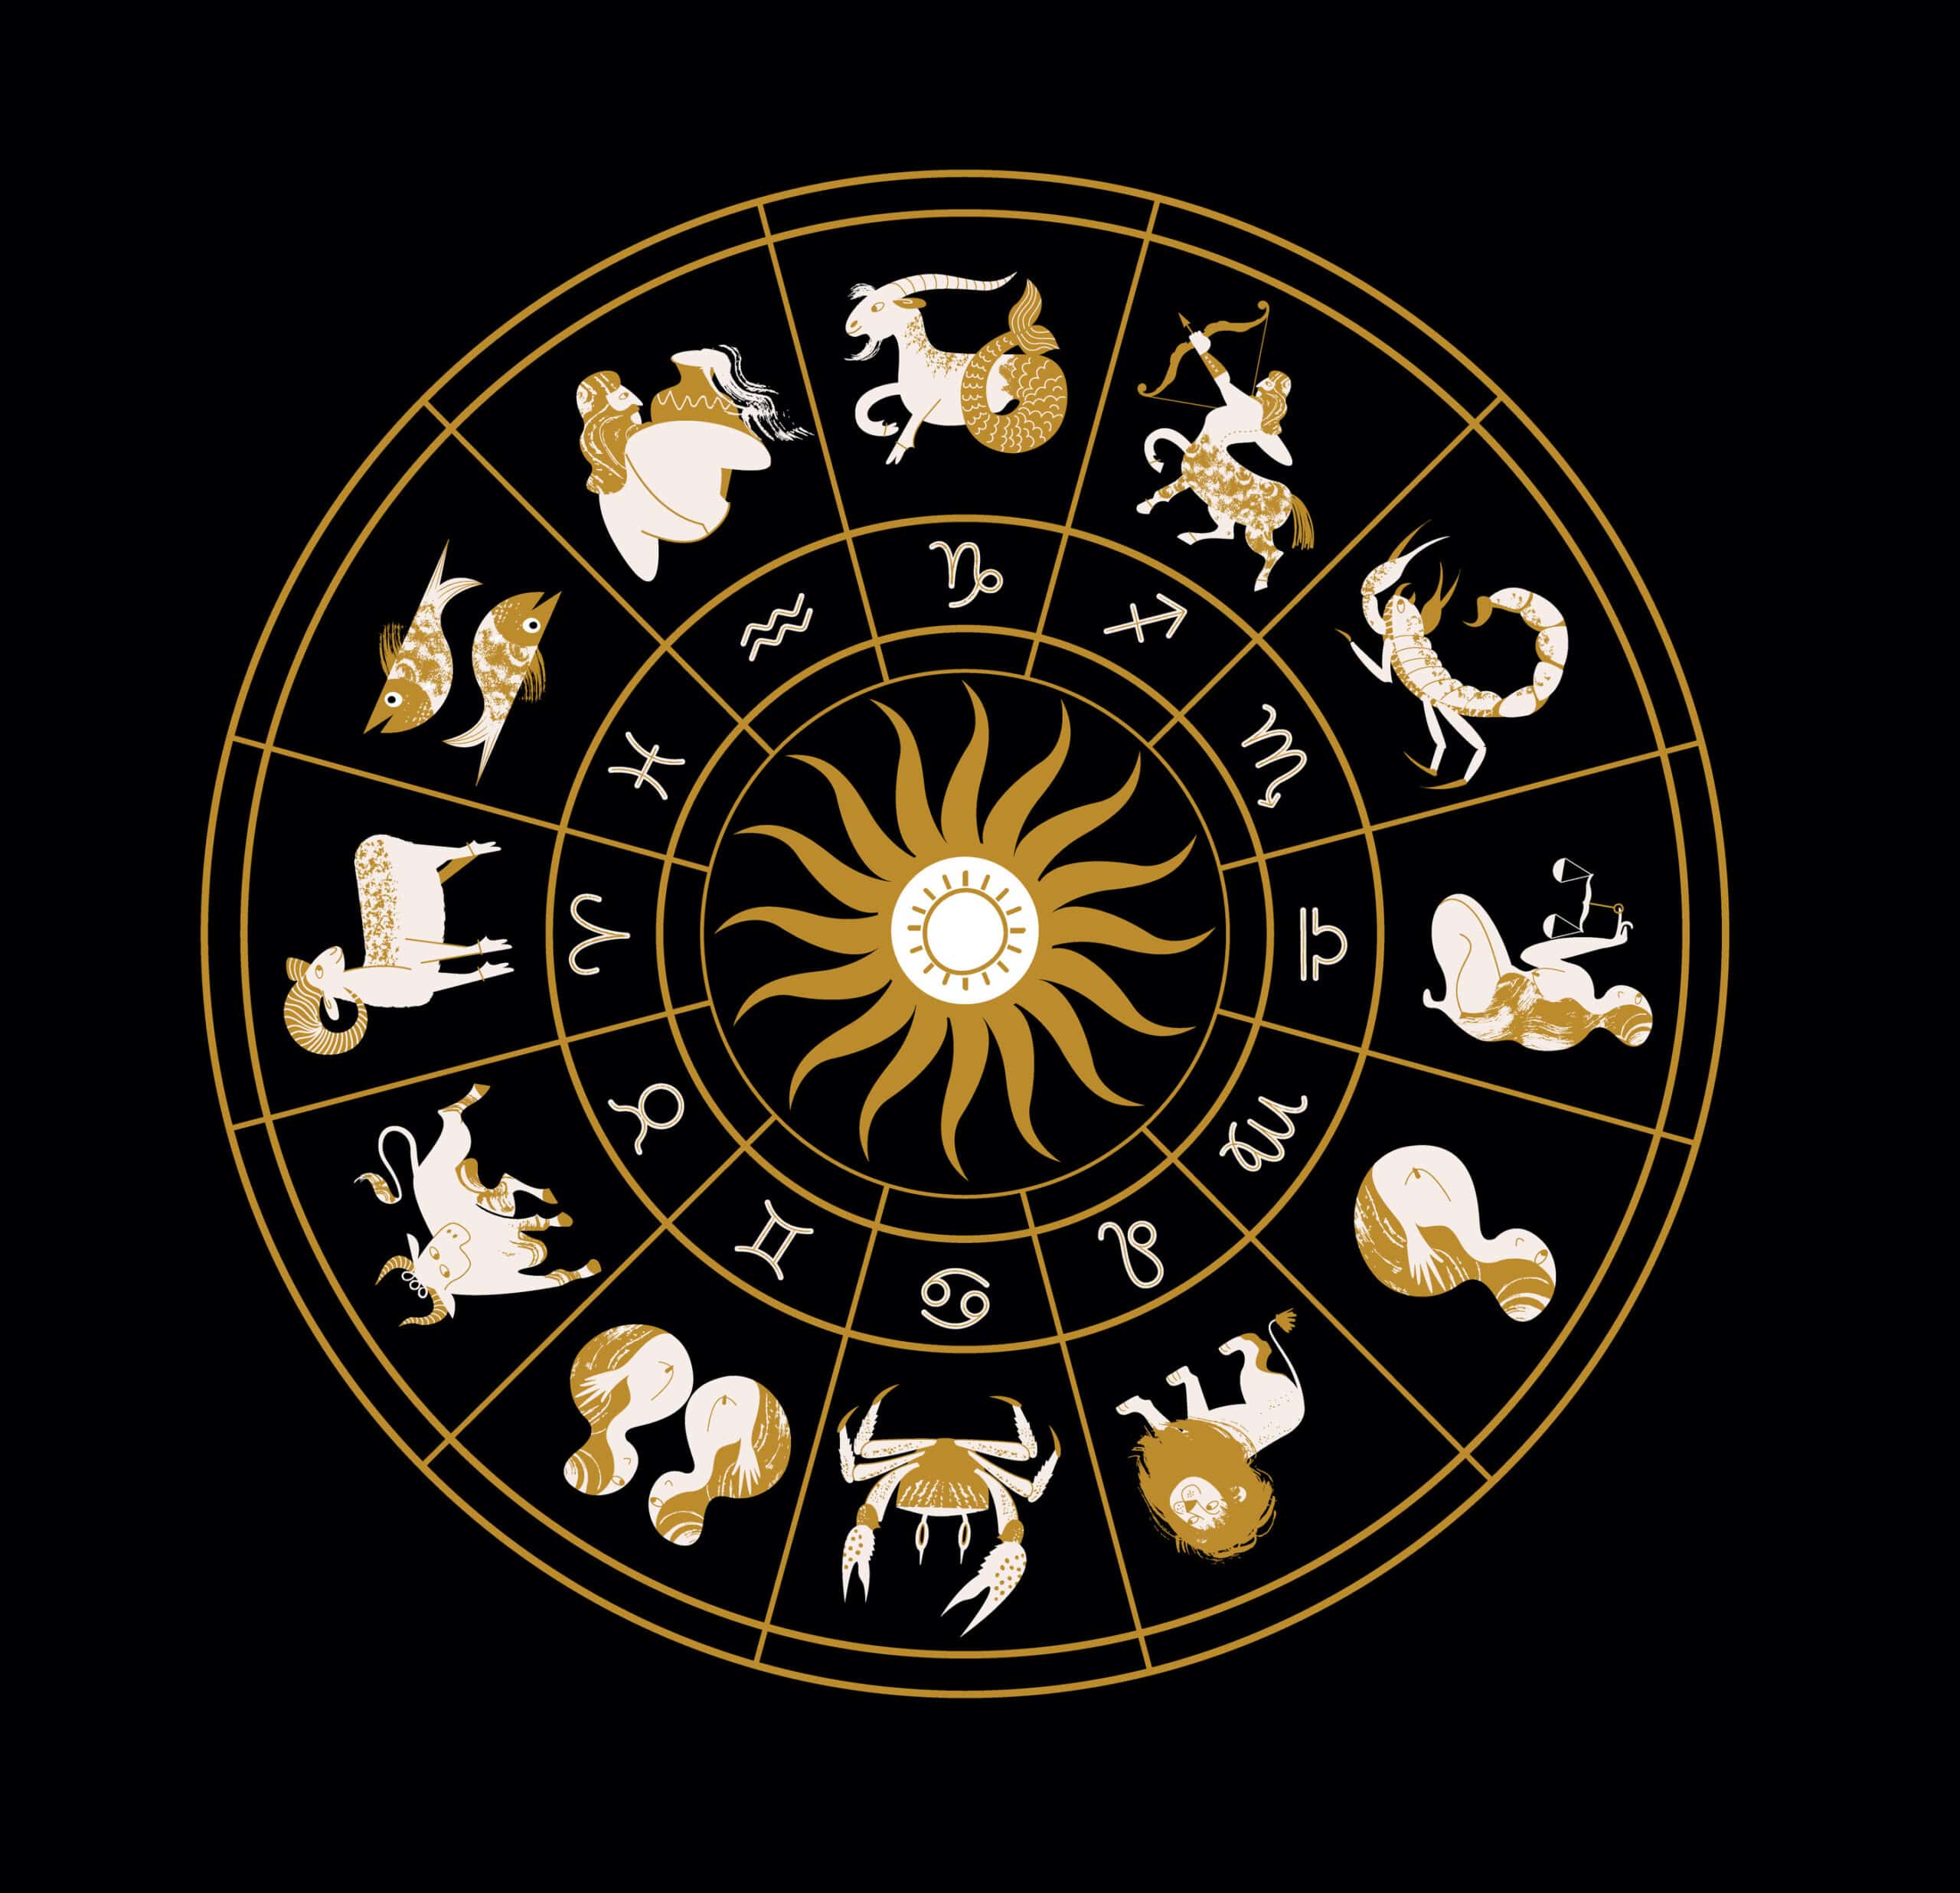 Libra zodiac sign. Full horoscope in the circle. Horoscope wheel zodiac with twelve signs vector. Aries; Taurus; Gemini; Cancer; Leo; Virgo; Libra; Scorpio; Sagittarius; Capricorn; Aquarius, Pisces